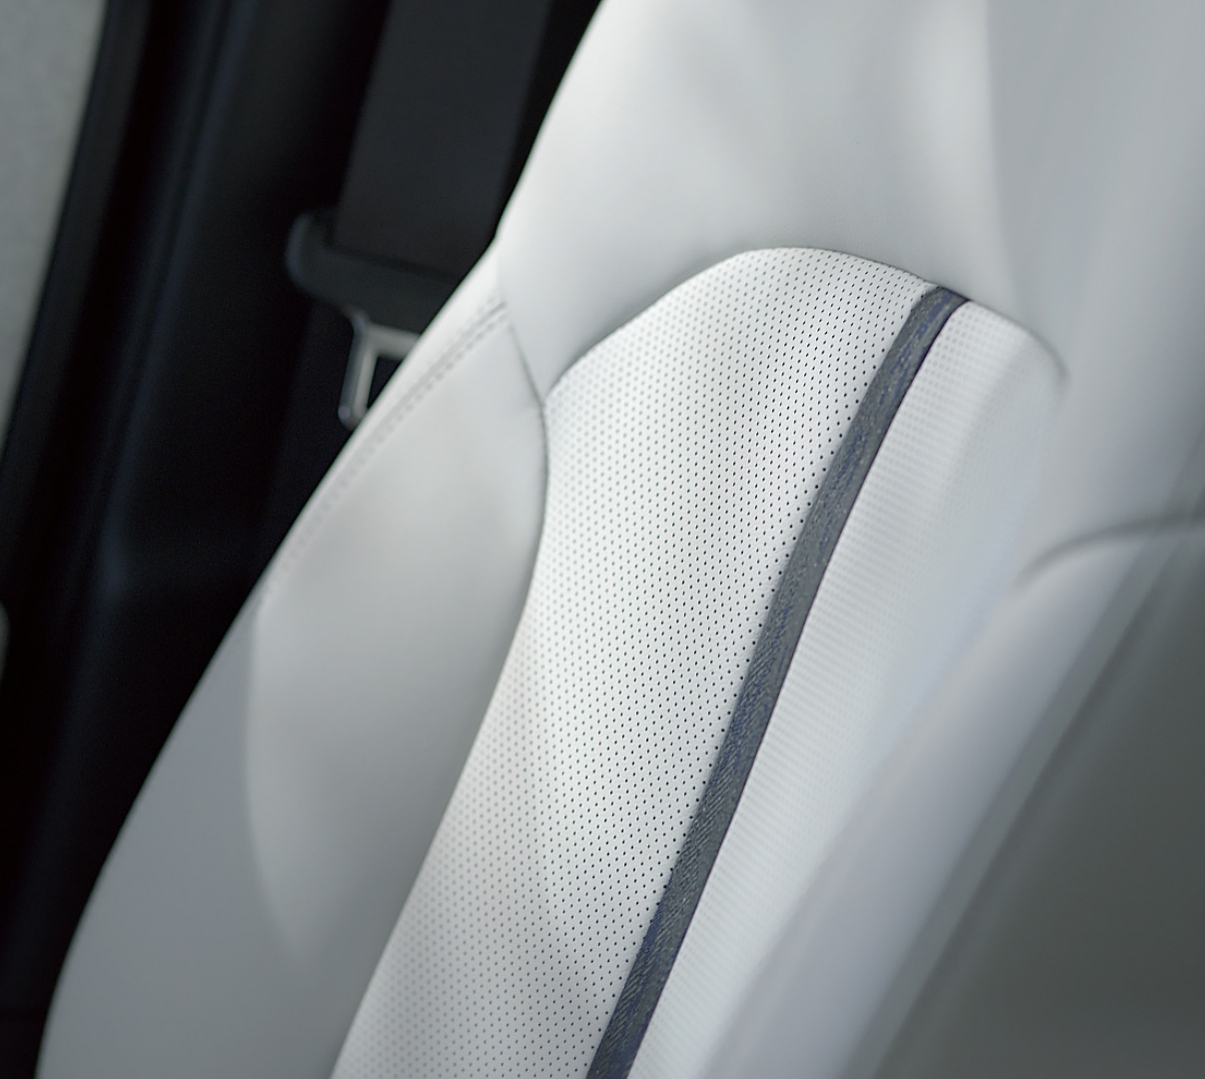 Siège avant du Mazda CX-60 avec réglage électrique en 10 positions, sièges chauffants, ventilation